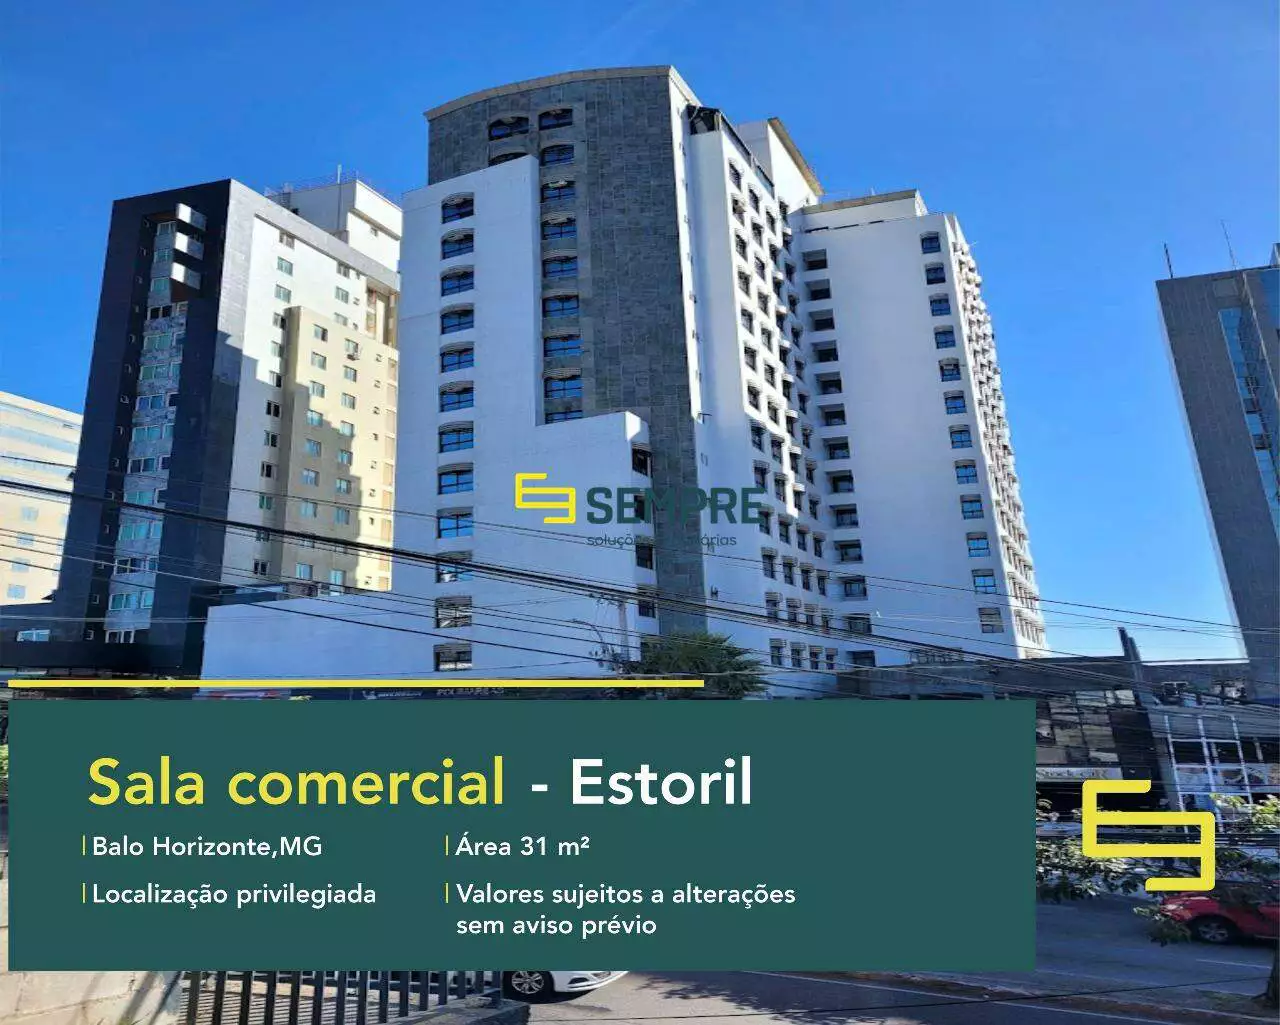 Sala comercial à venda no Estoril em Belo Horizonte, em excelente localização. O estabelecimento comercial conta com área de 31 m².